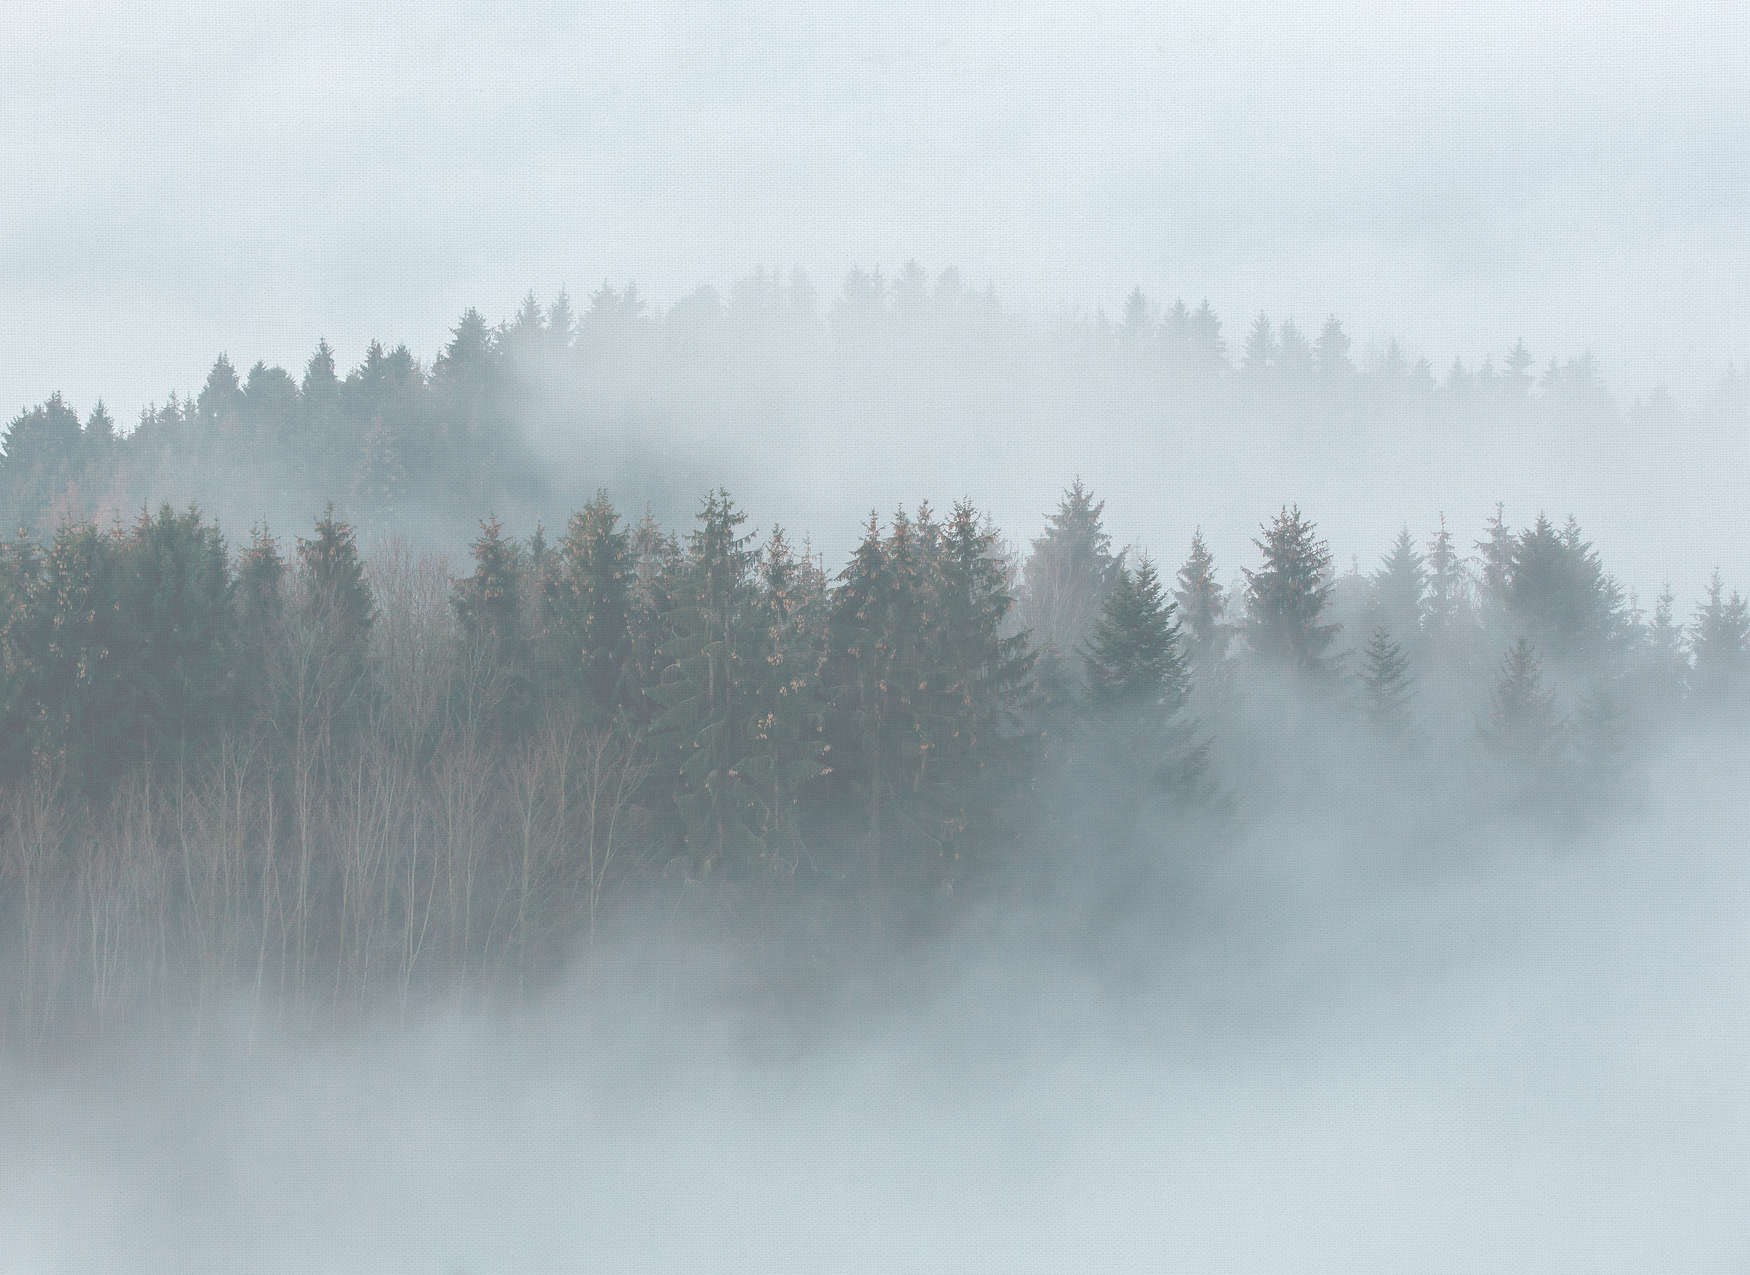             Forêt mystérieuse dans le brouillard - Blanc, vert, gris
        